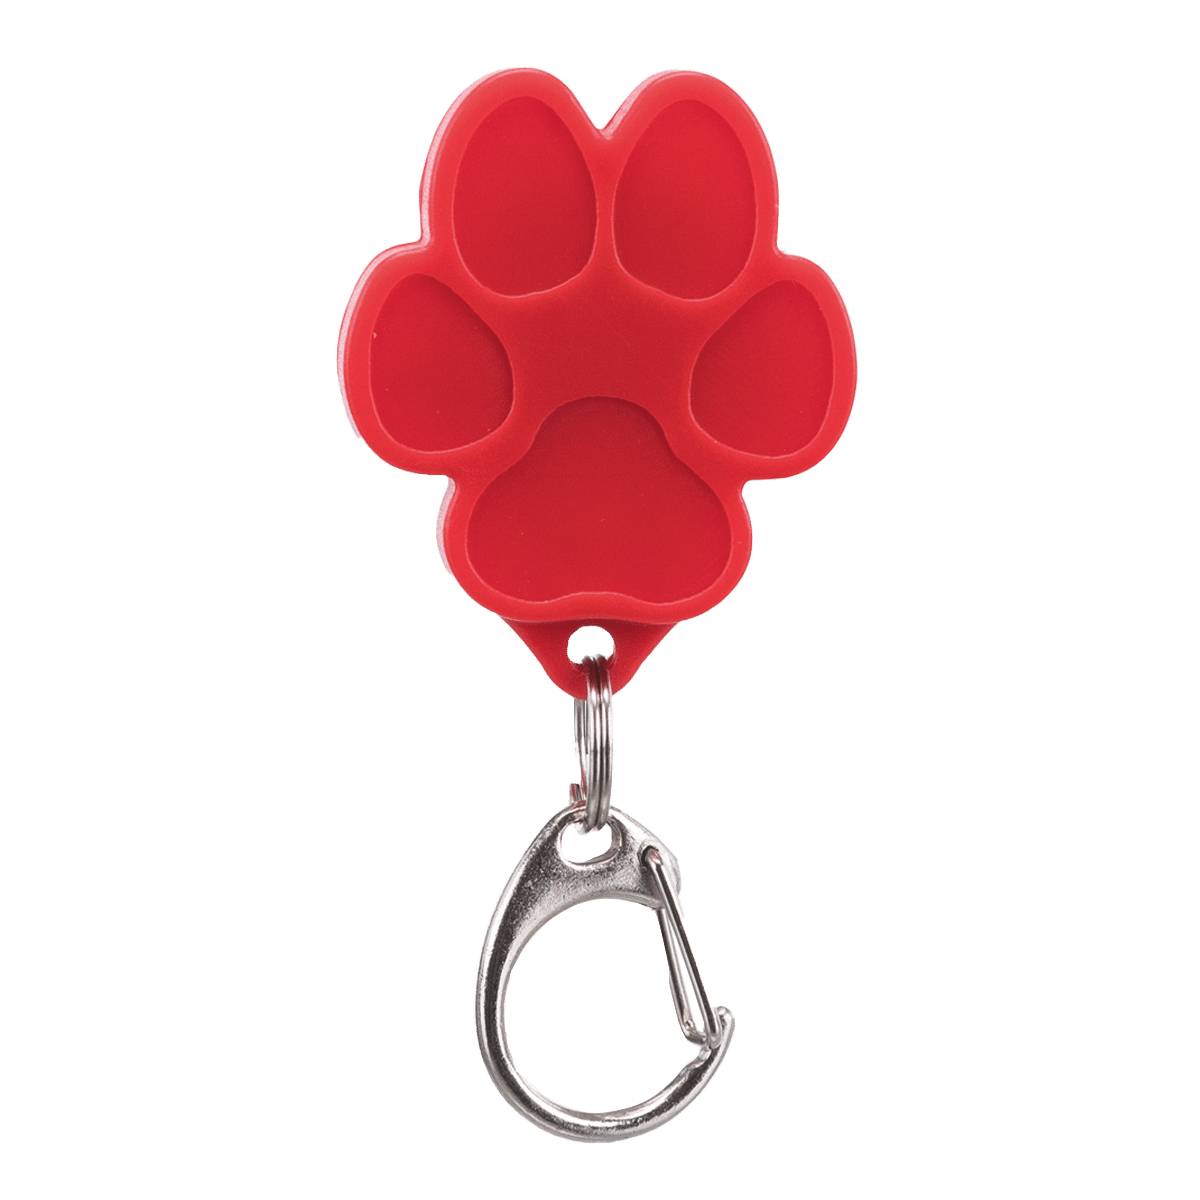 Röd USB-lampa i form av en hundtass